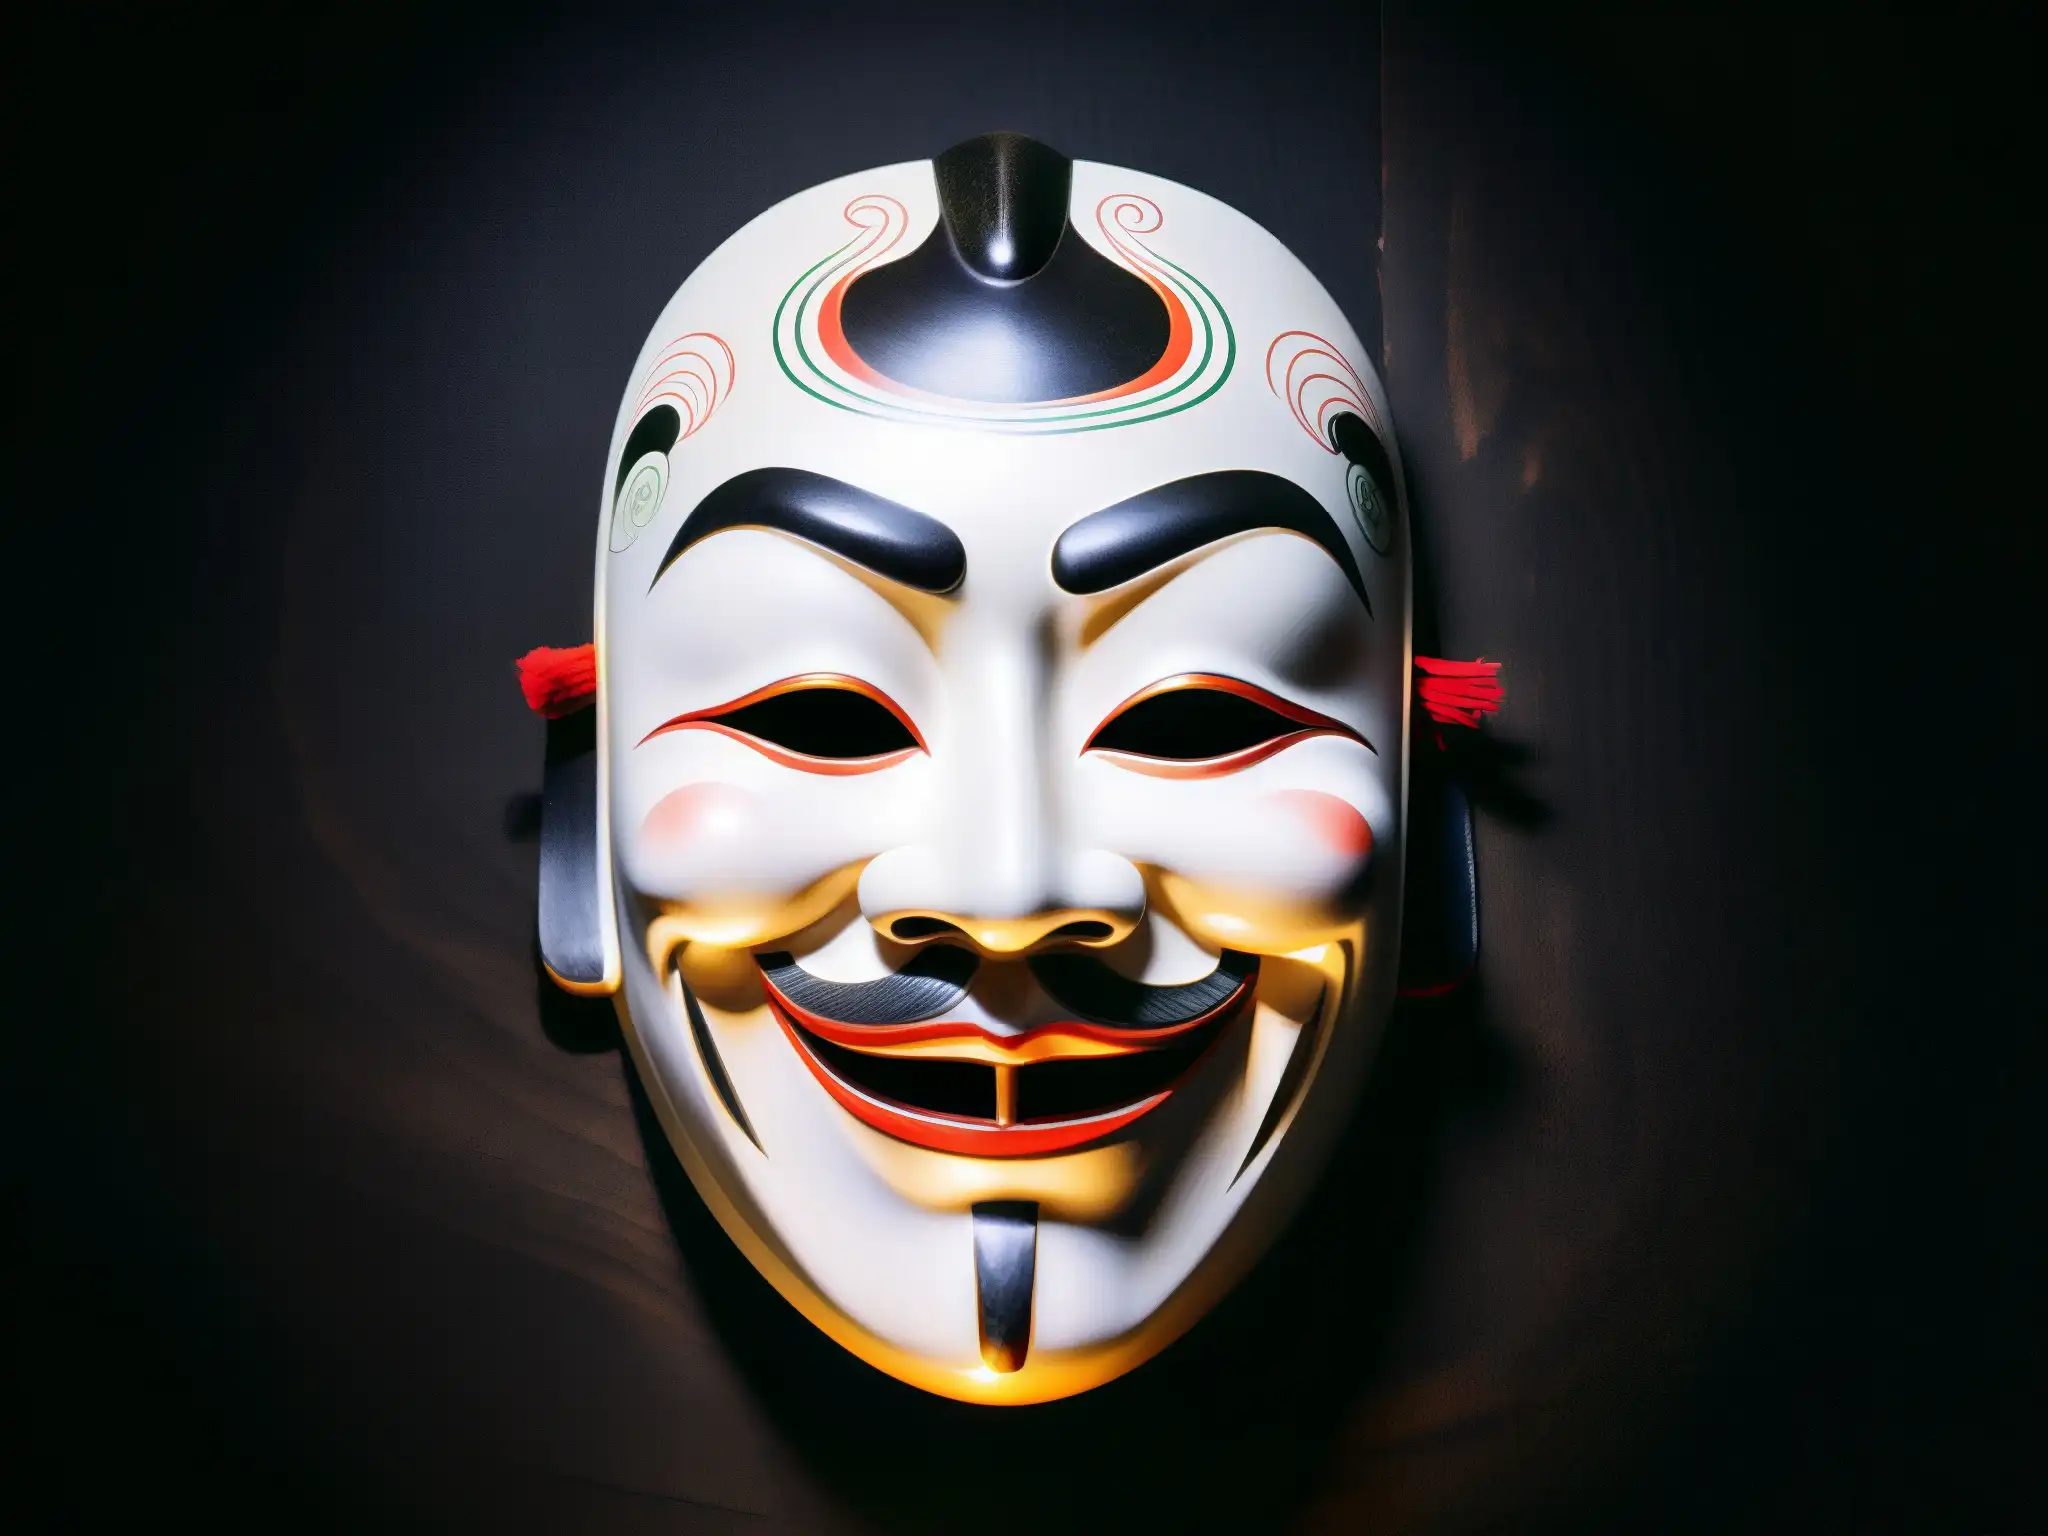 Una máscara japonesa Noh con detalles intrincados, iluminada en un fondo oscuro, evocando al Misterioso Hombre Sin Rostro Japonés